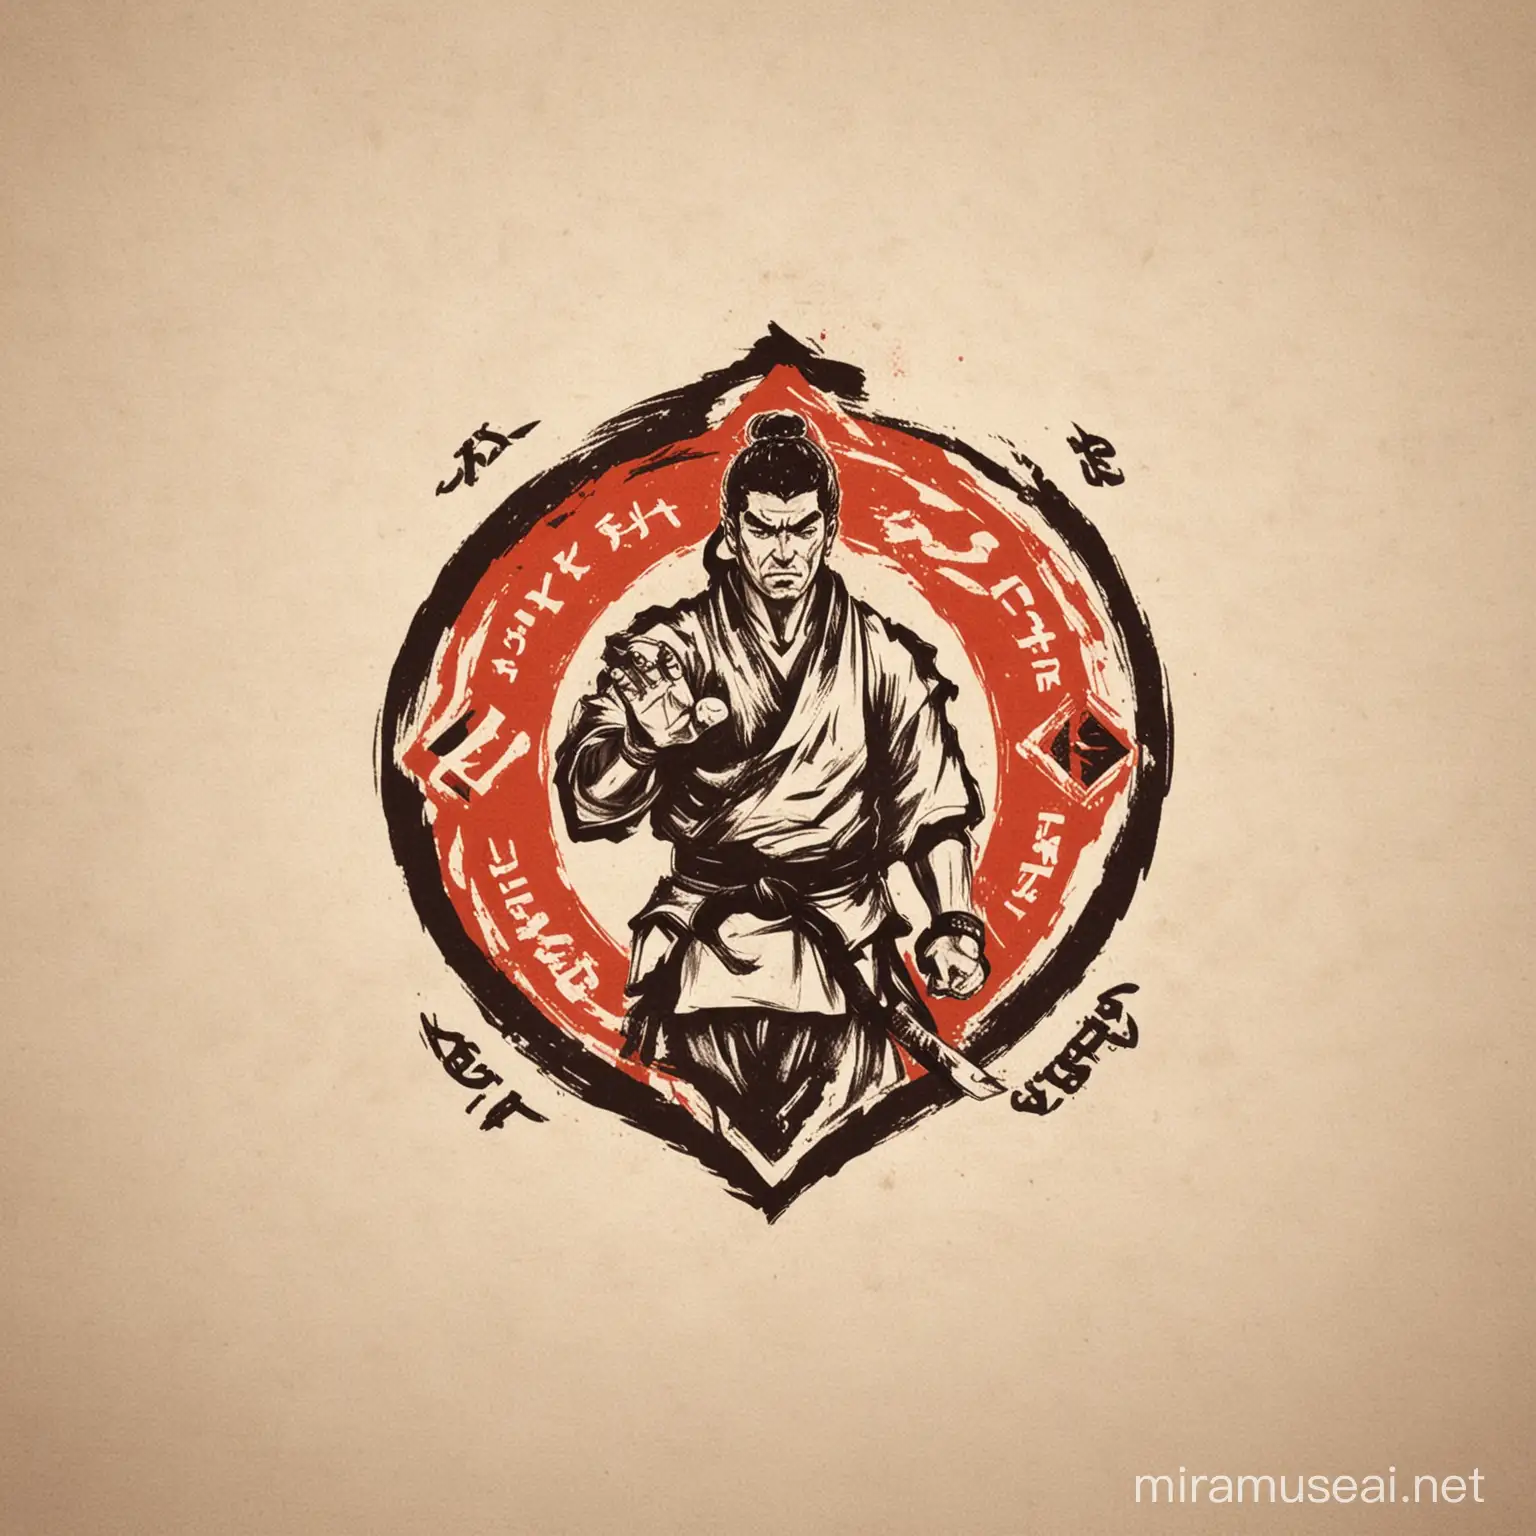 Dynamic Kyokushin Karate Combat Logo for Instagram